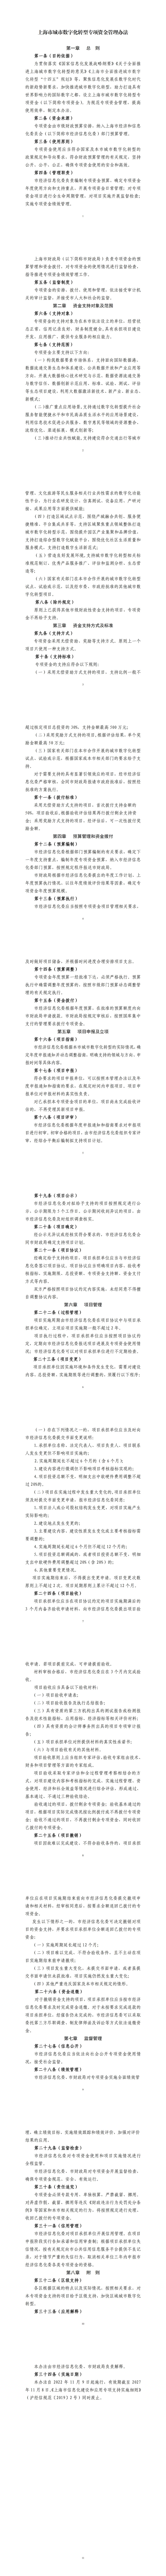 上海市城市数字化转型专项资金管理办法_00.jpg